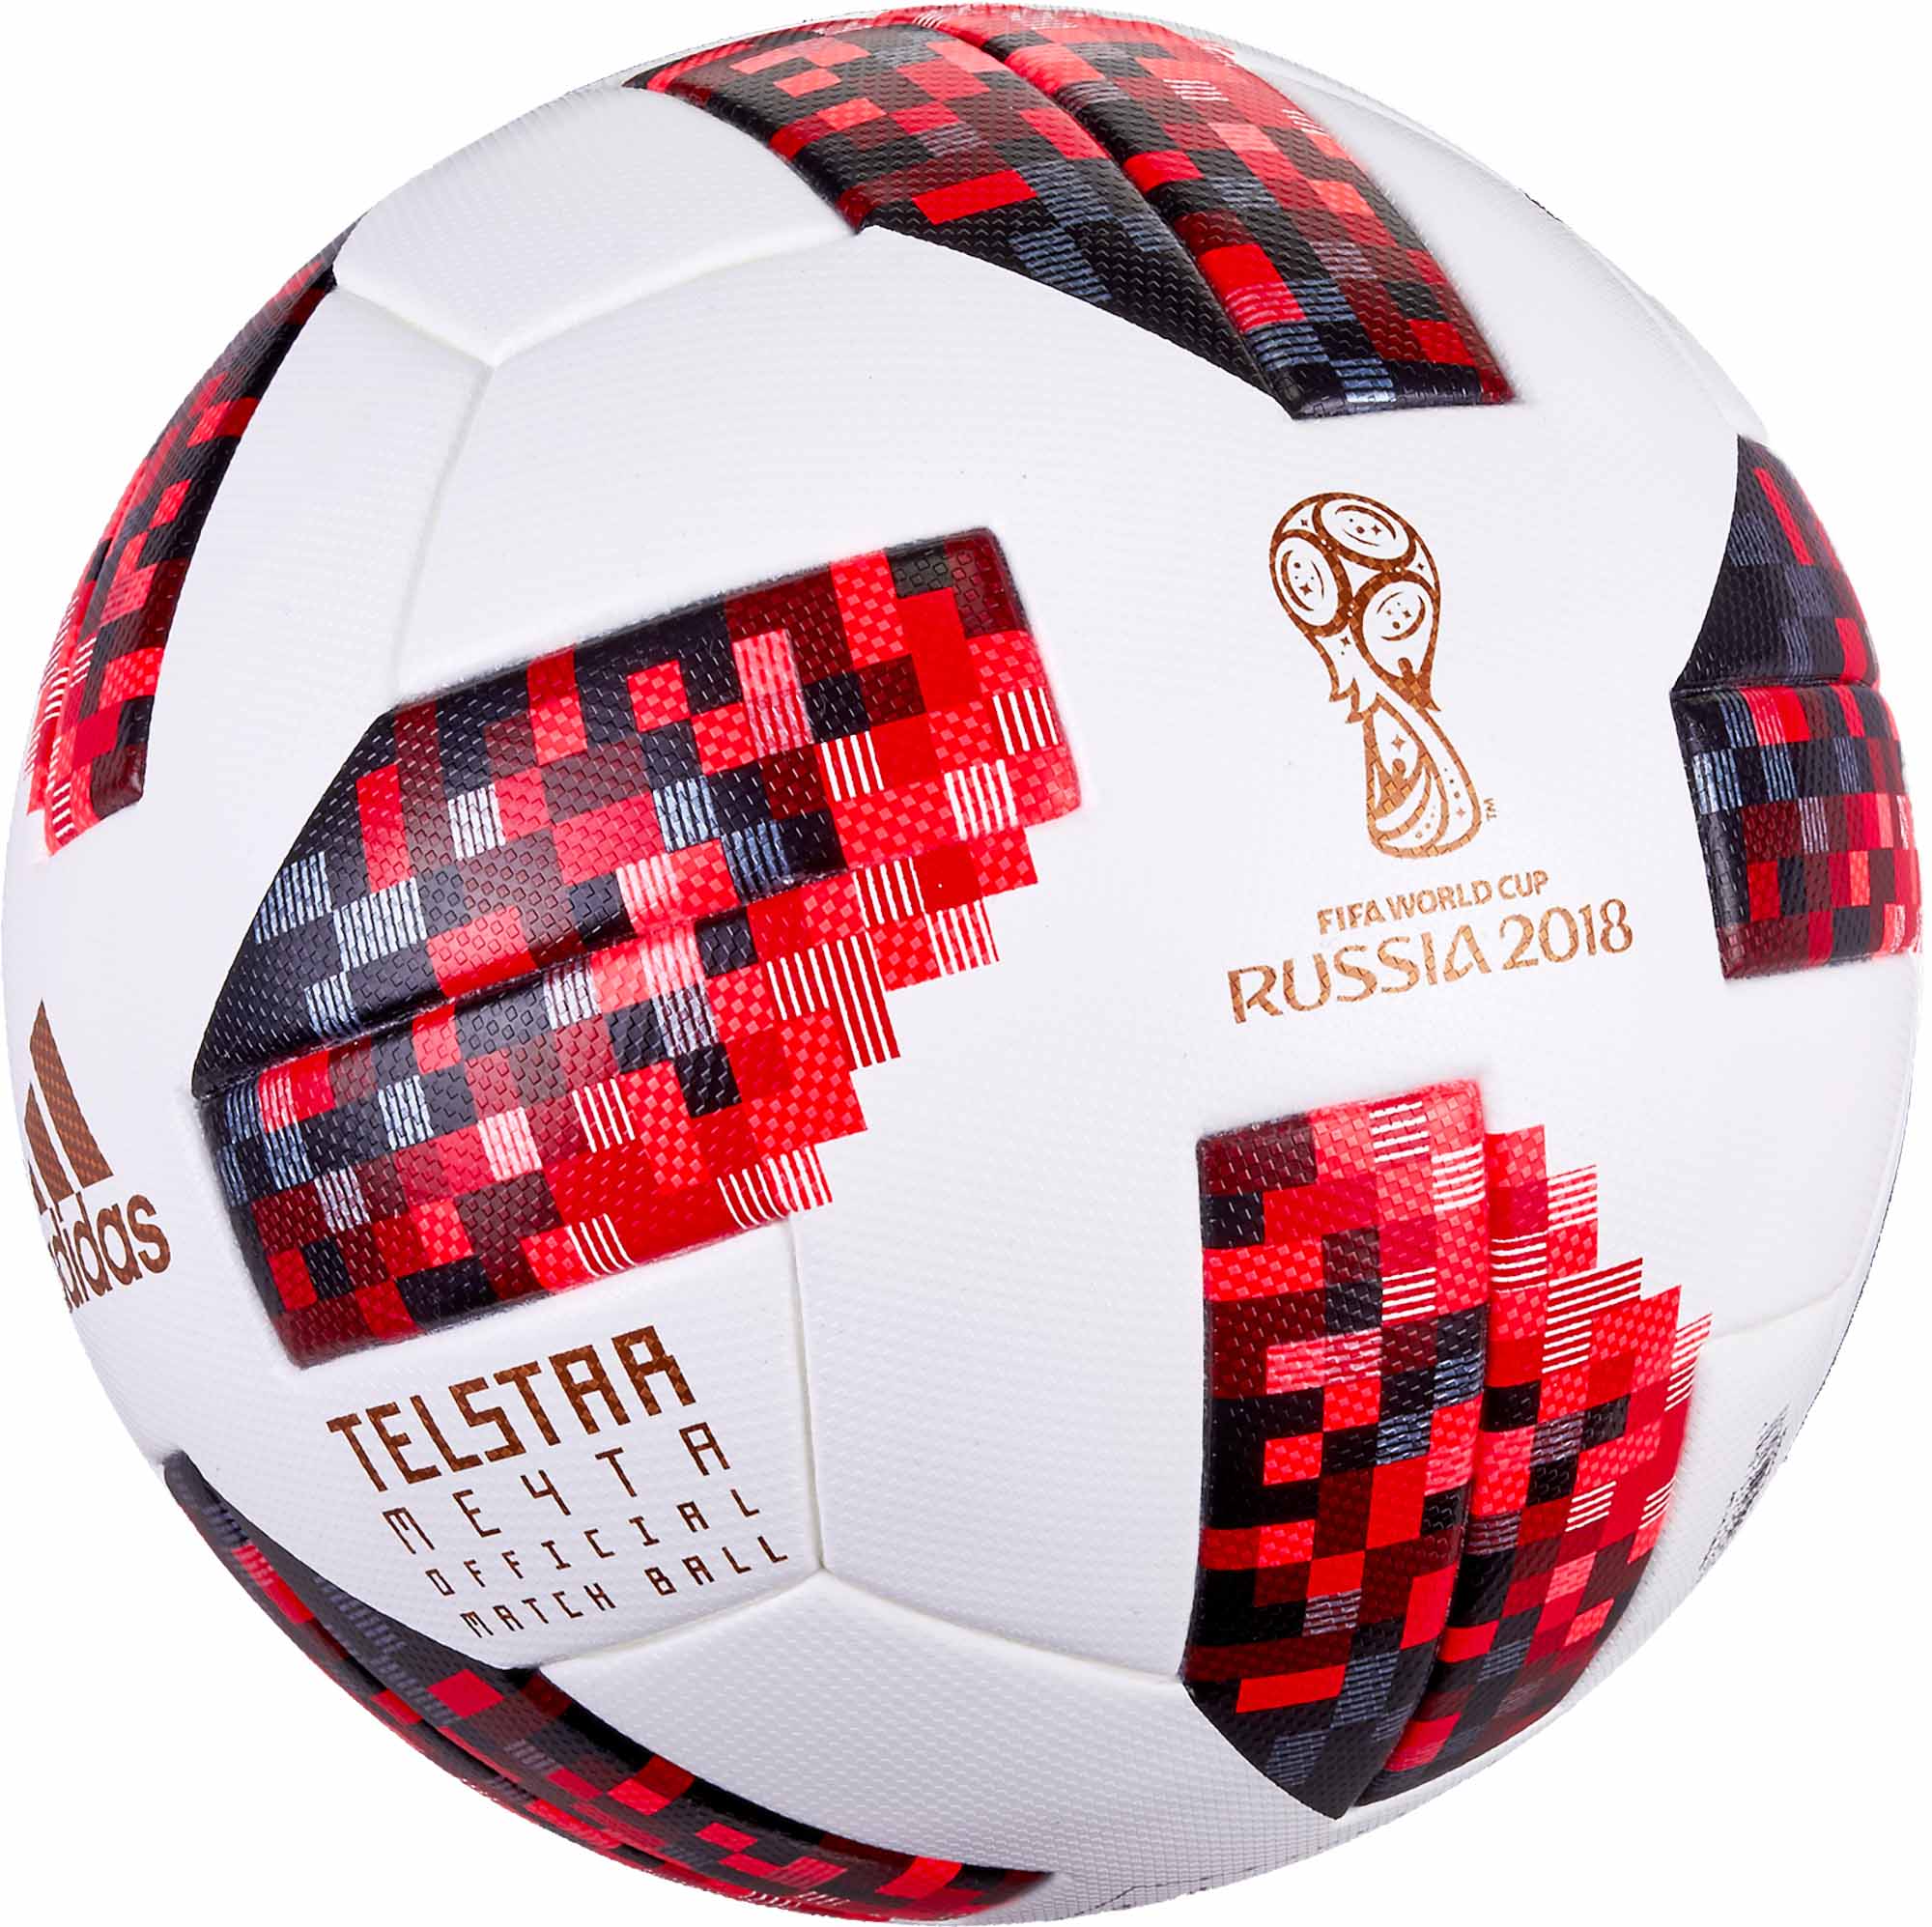 adidas telstar 18 official match ball